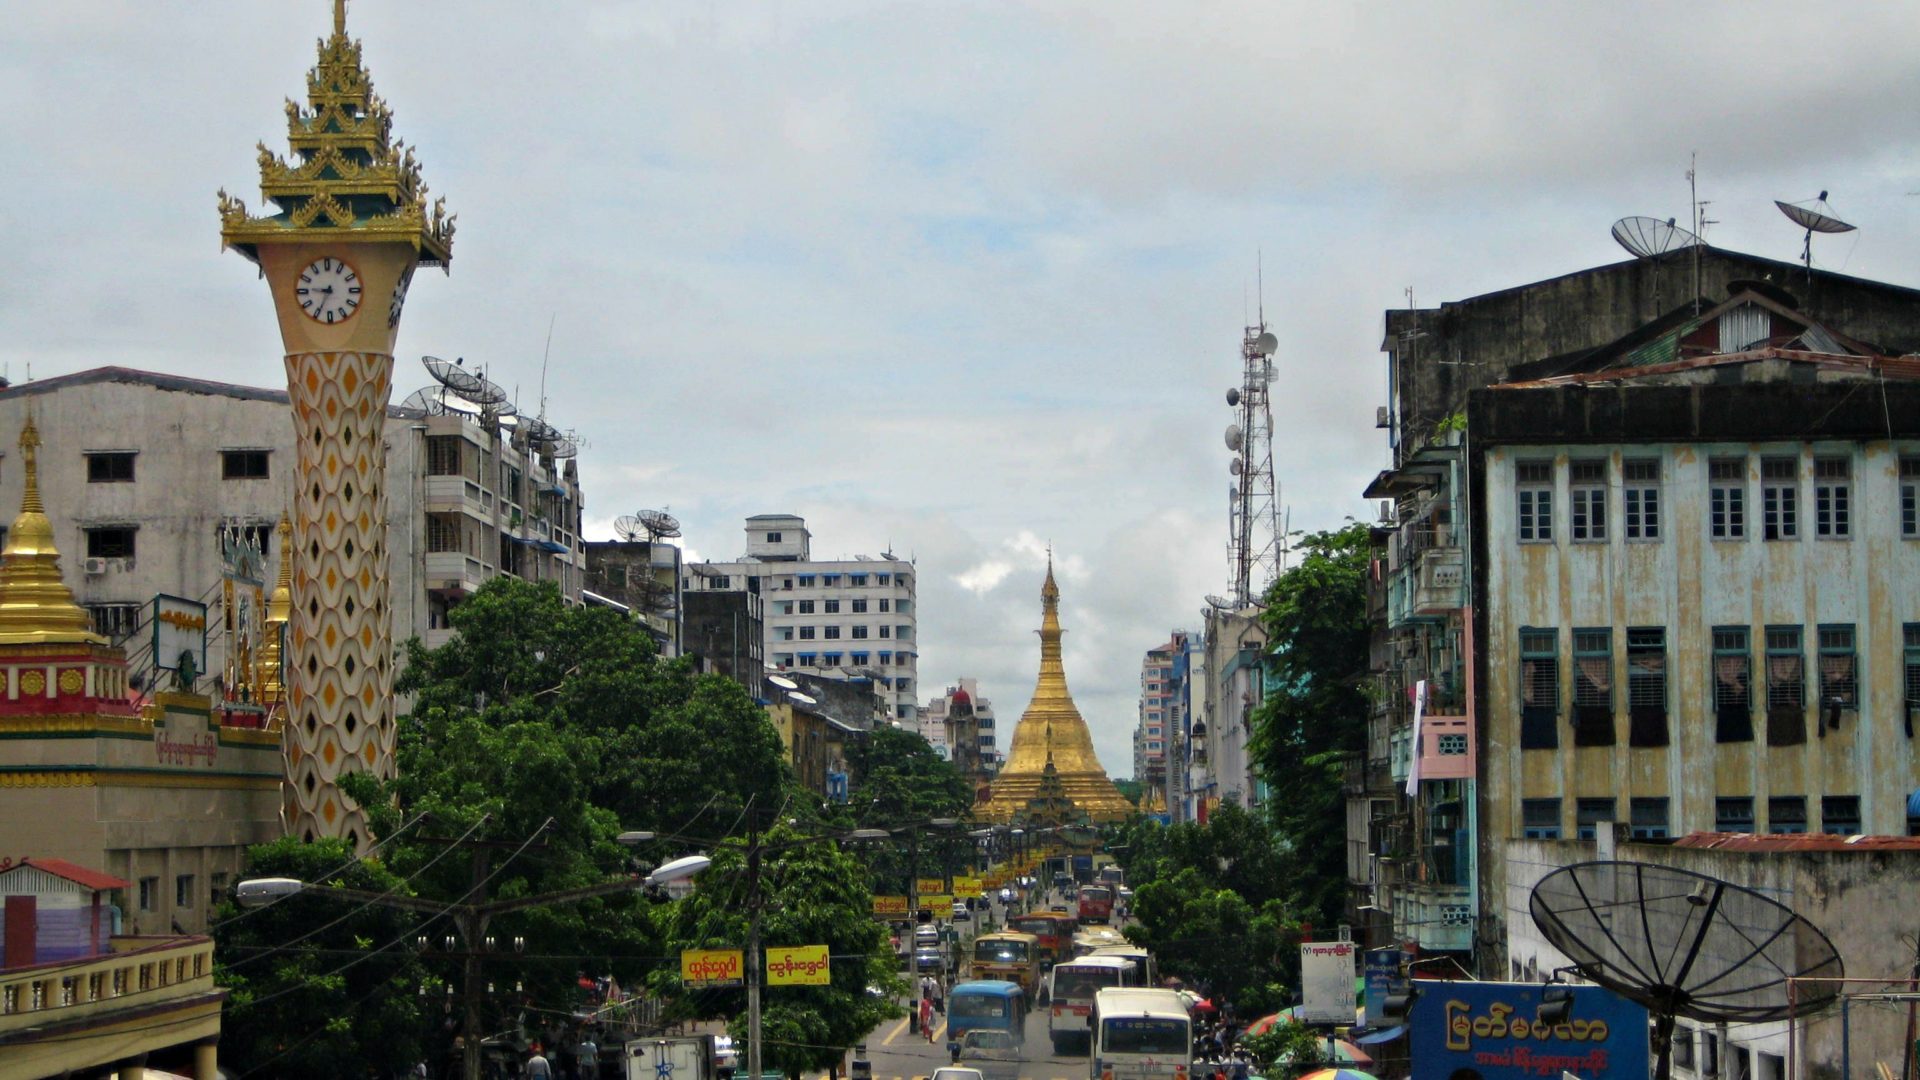 Le Myanmar est un pays majoritairement bouddhiste (Photo:rguha/Flickr/CC BY-NC-ND 2.0)